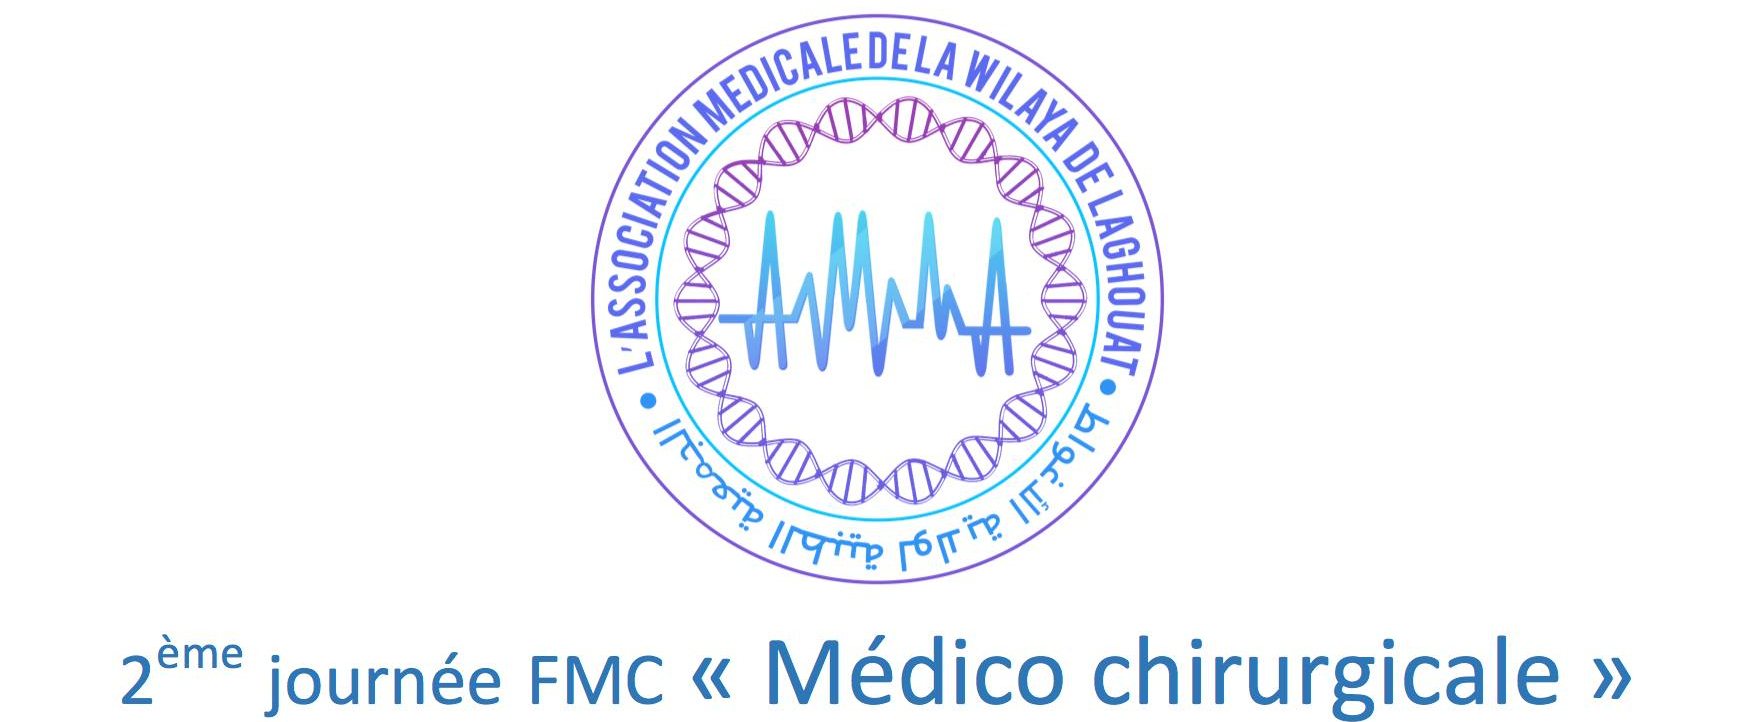 La 2ème Journée Médico Chirurgicale FMC